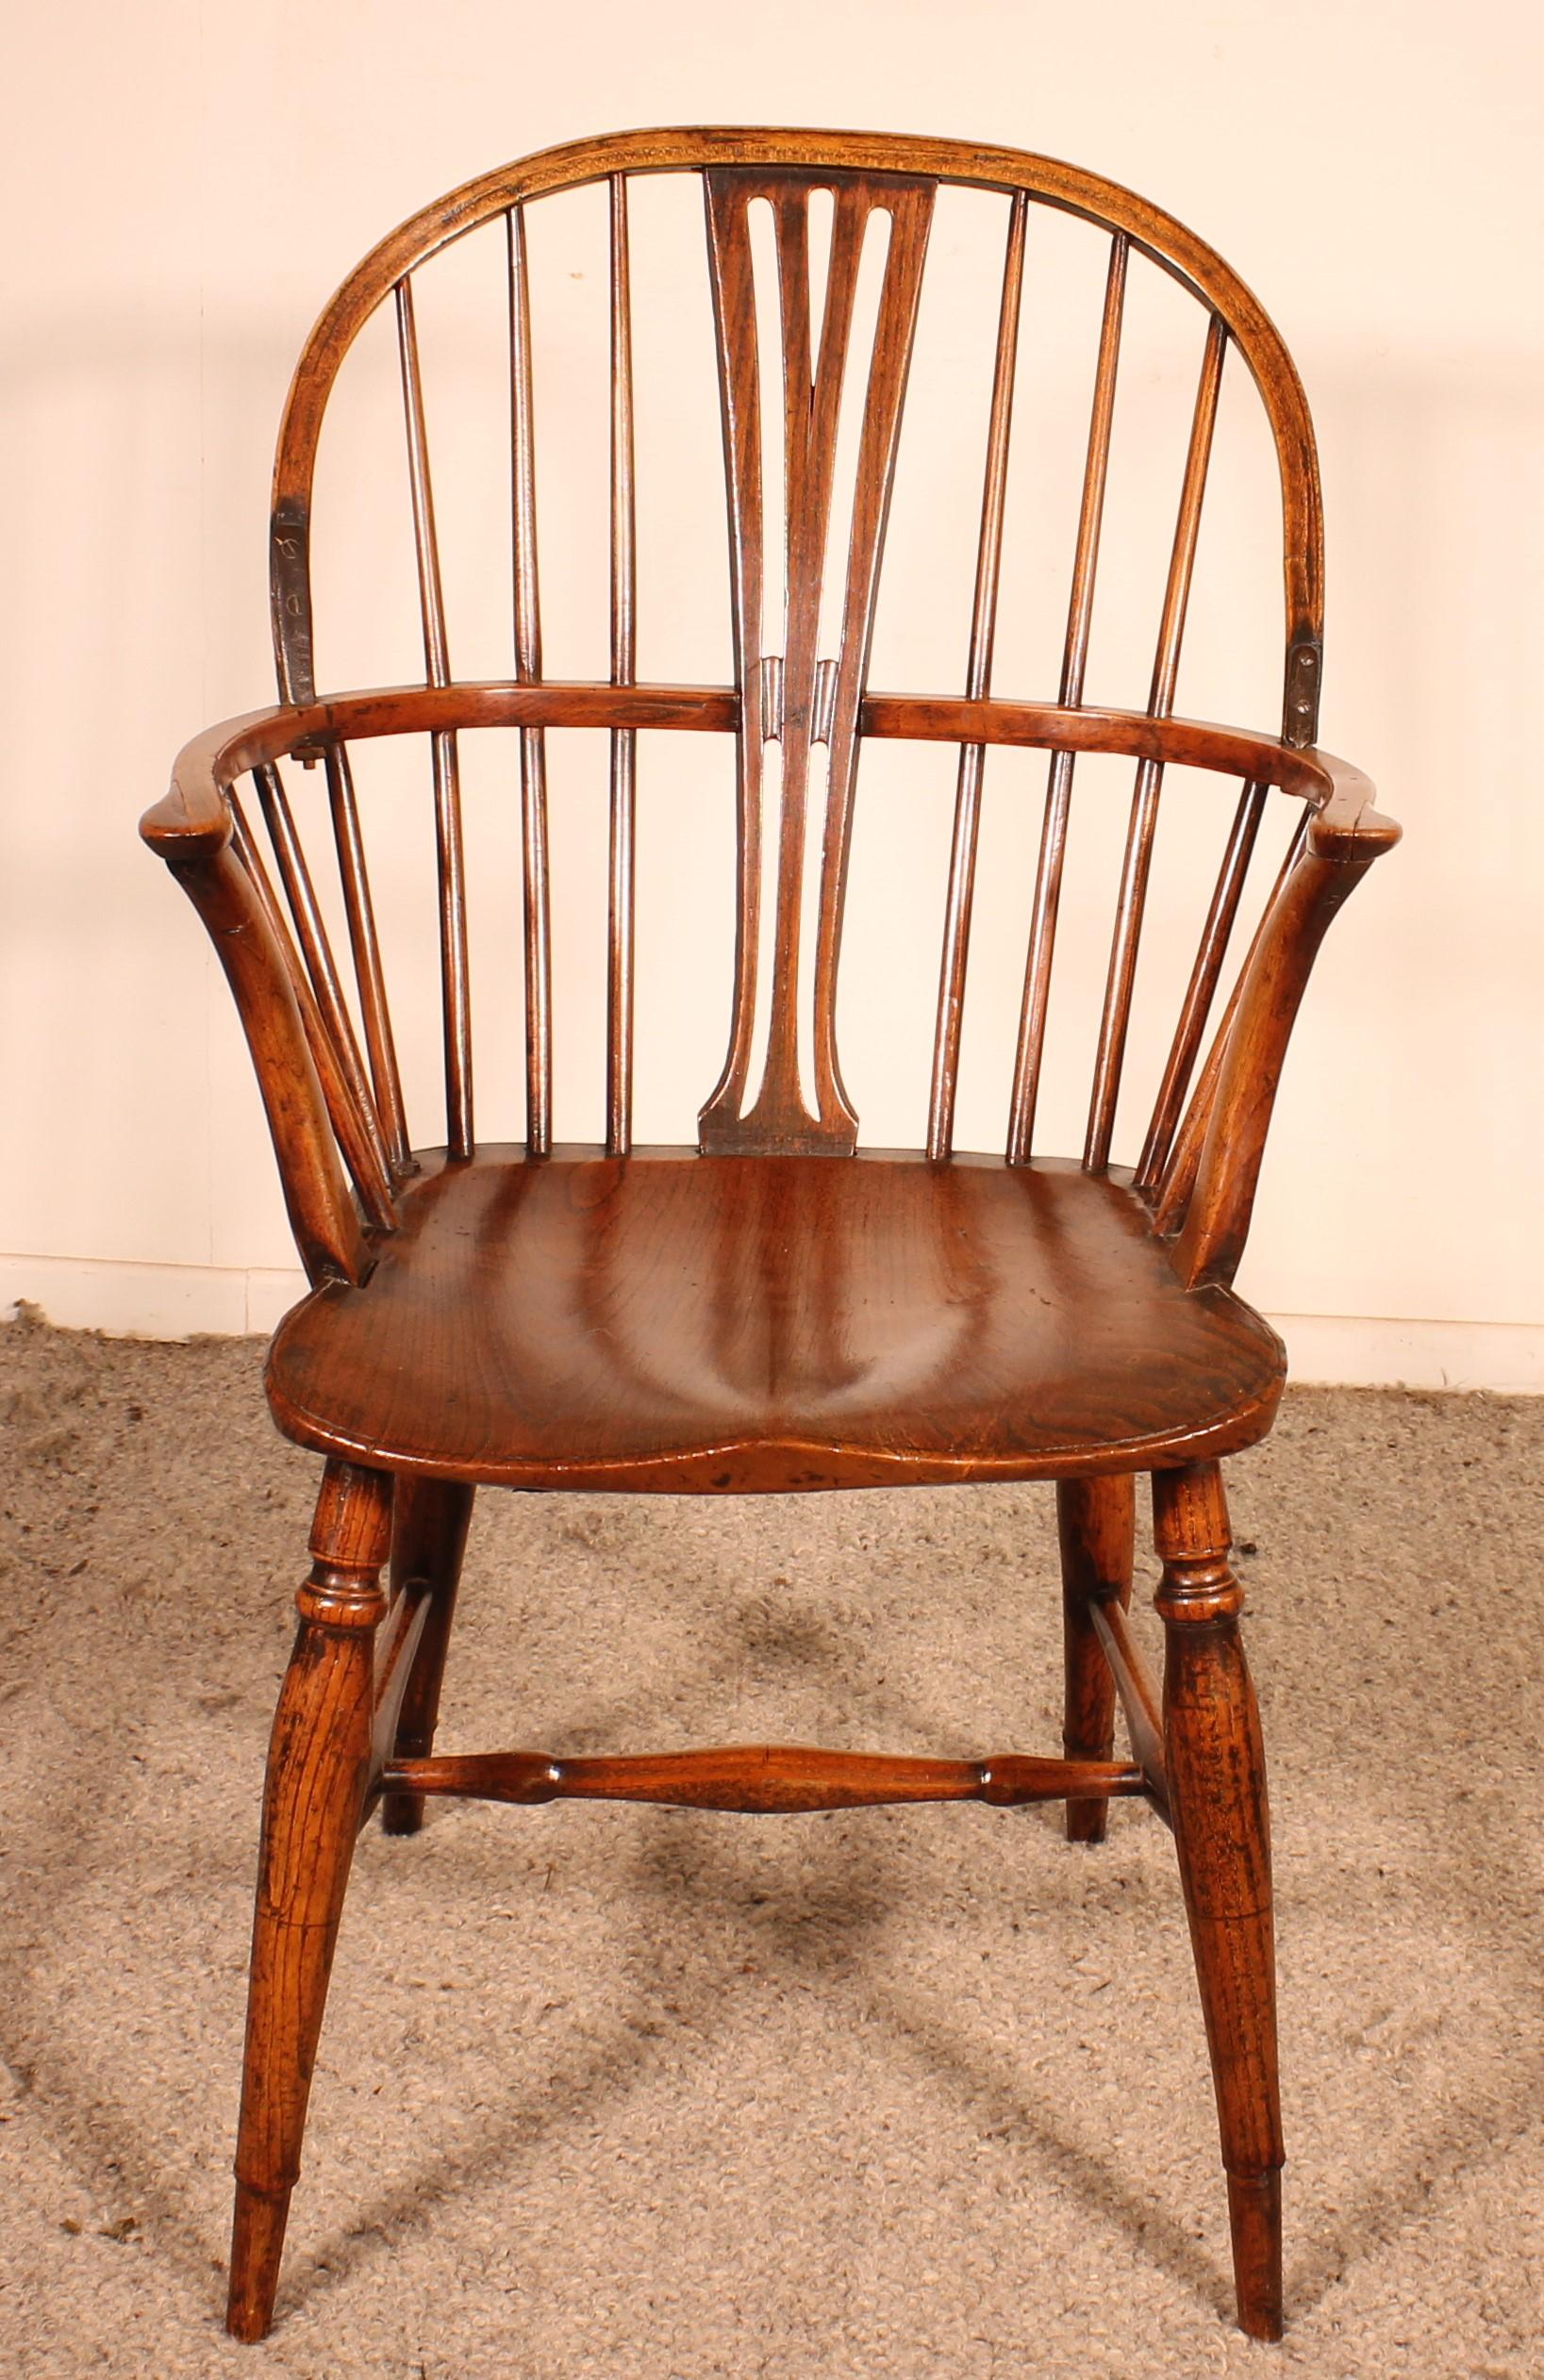 Elegant fauteuil Windsor anglais du début du 19ème siècle en châtaignier

Très belle patine et en superbe état.

Fauteuil très élégant qui se distingue par son dossier à fines lattes ce qui est inhabituel. Deux restaurations en fer forgé du 19e